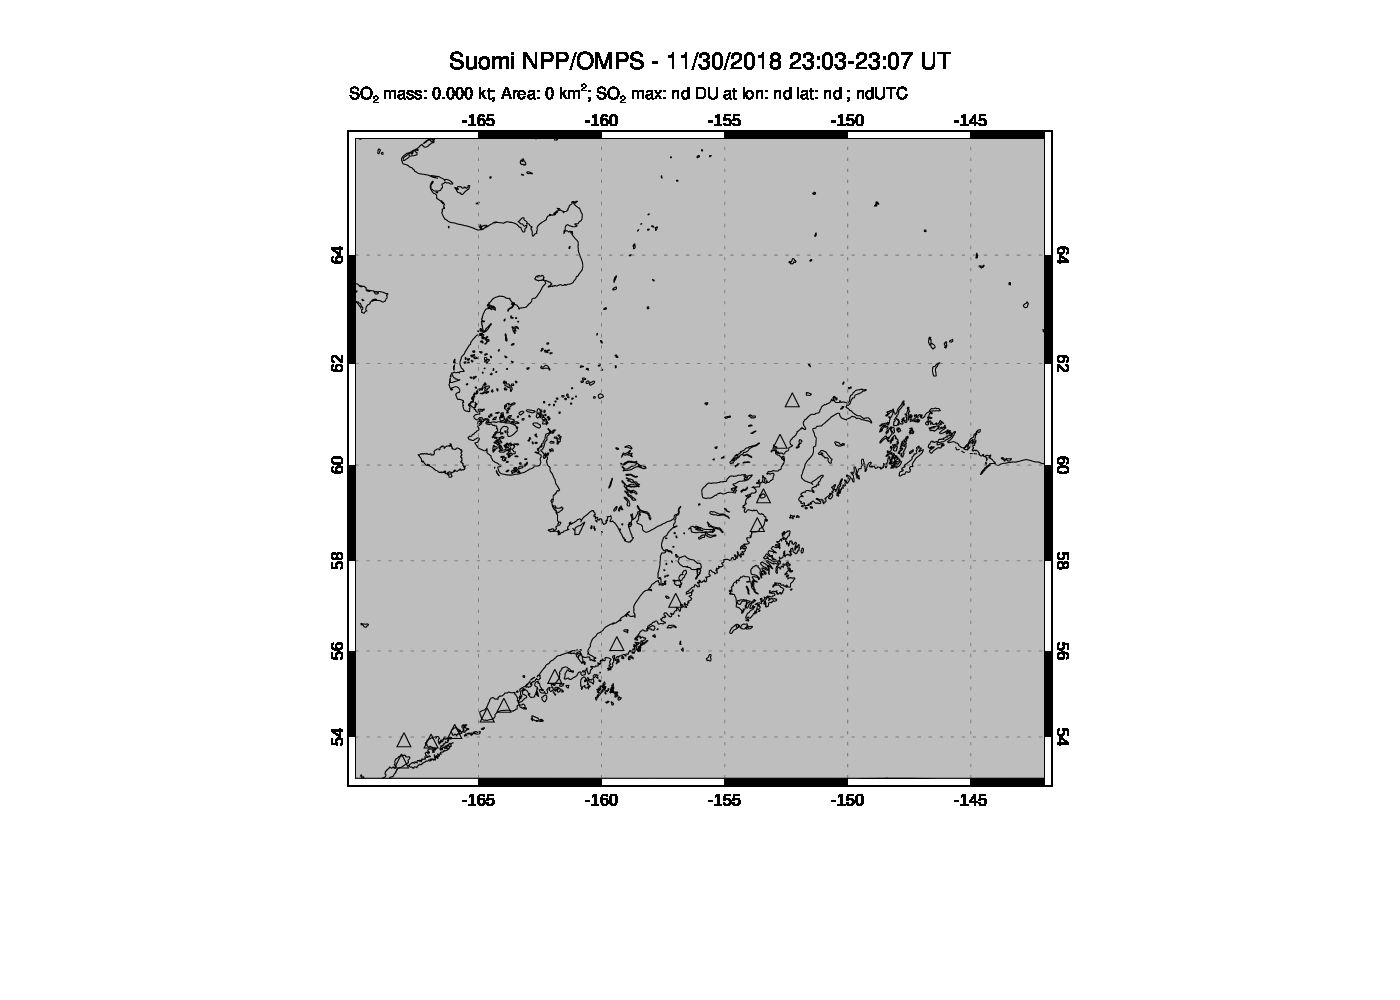 A sulfur dioxide image over Alaska, USA on Nov 30, 2018.